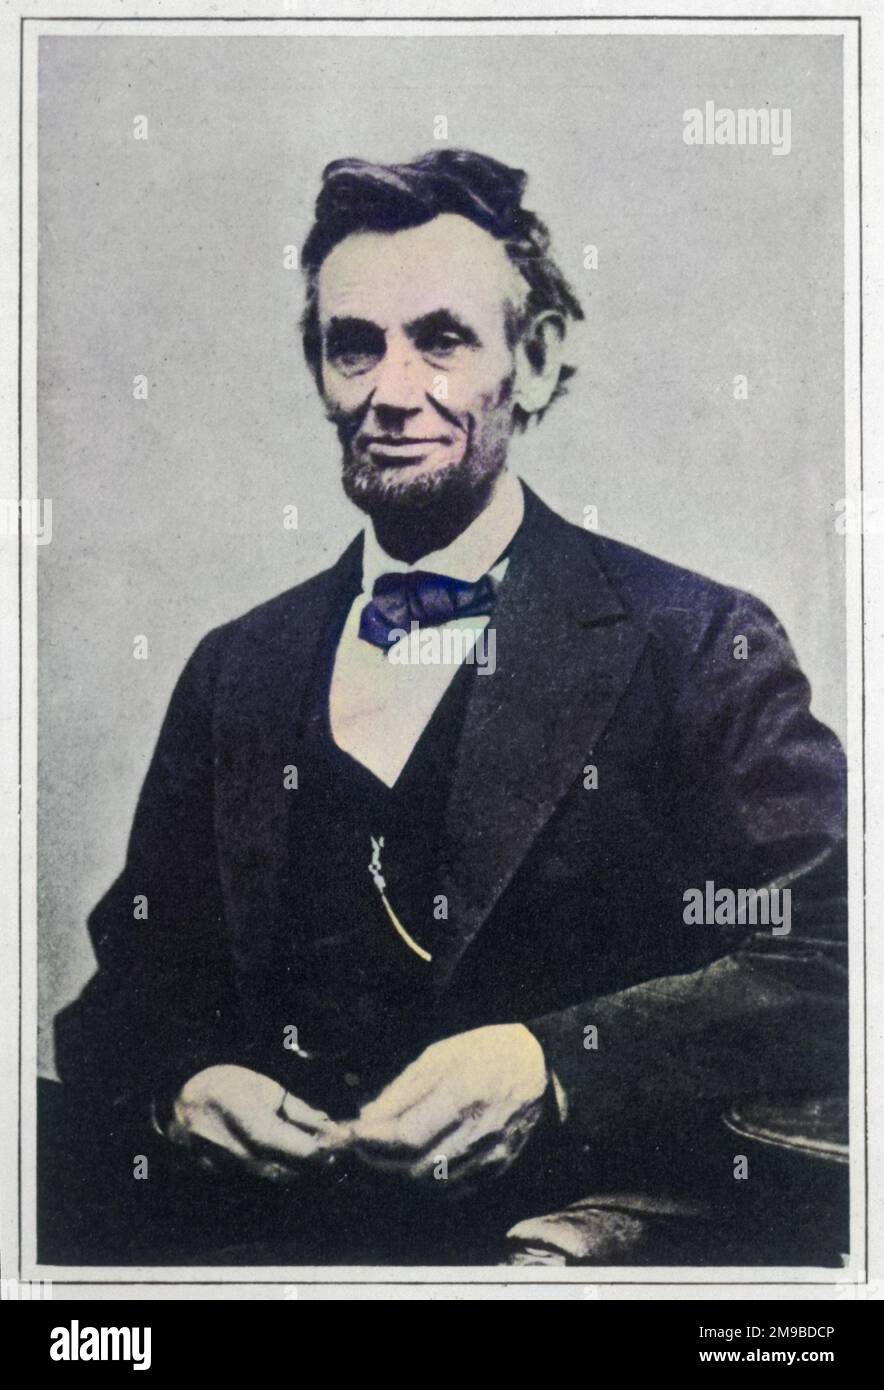 Abraham Lincoln (1809 - 1865), la dernière photographie officielle prise, le jour où la Confédération s'est rendue, 5 jours avant sa mort. Banque D'Images